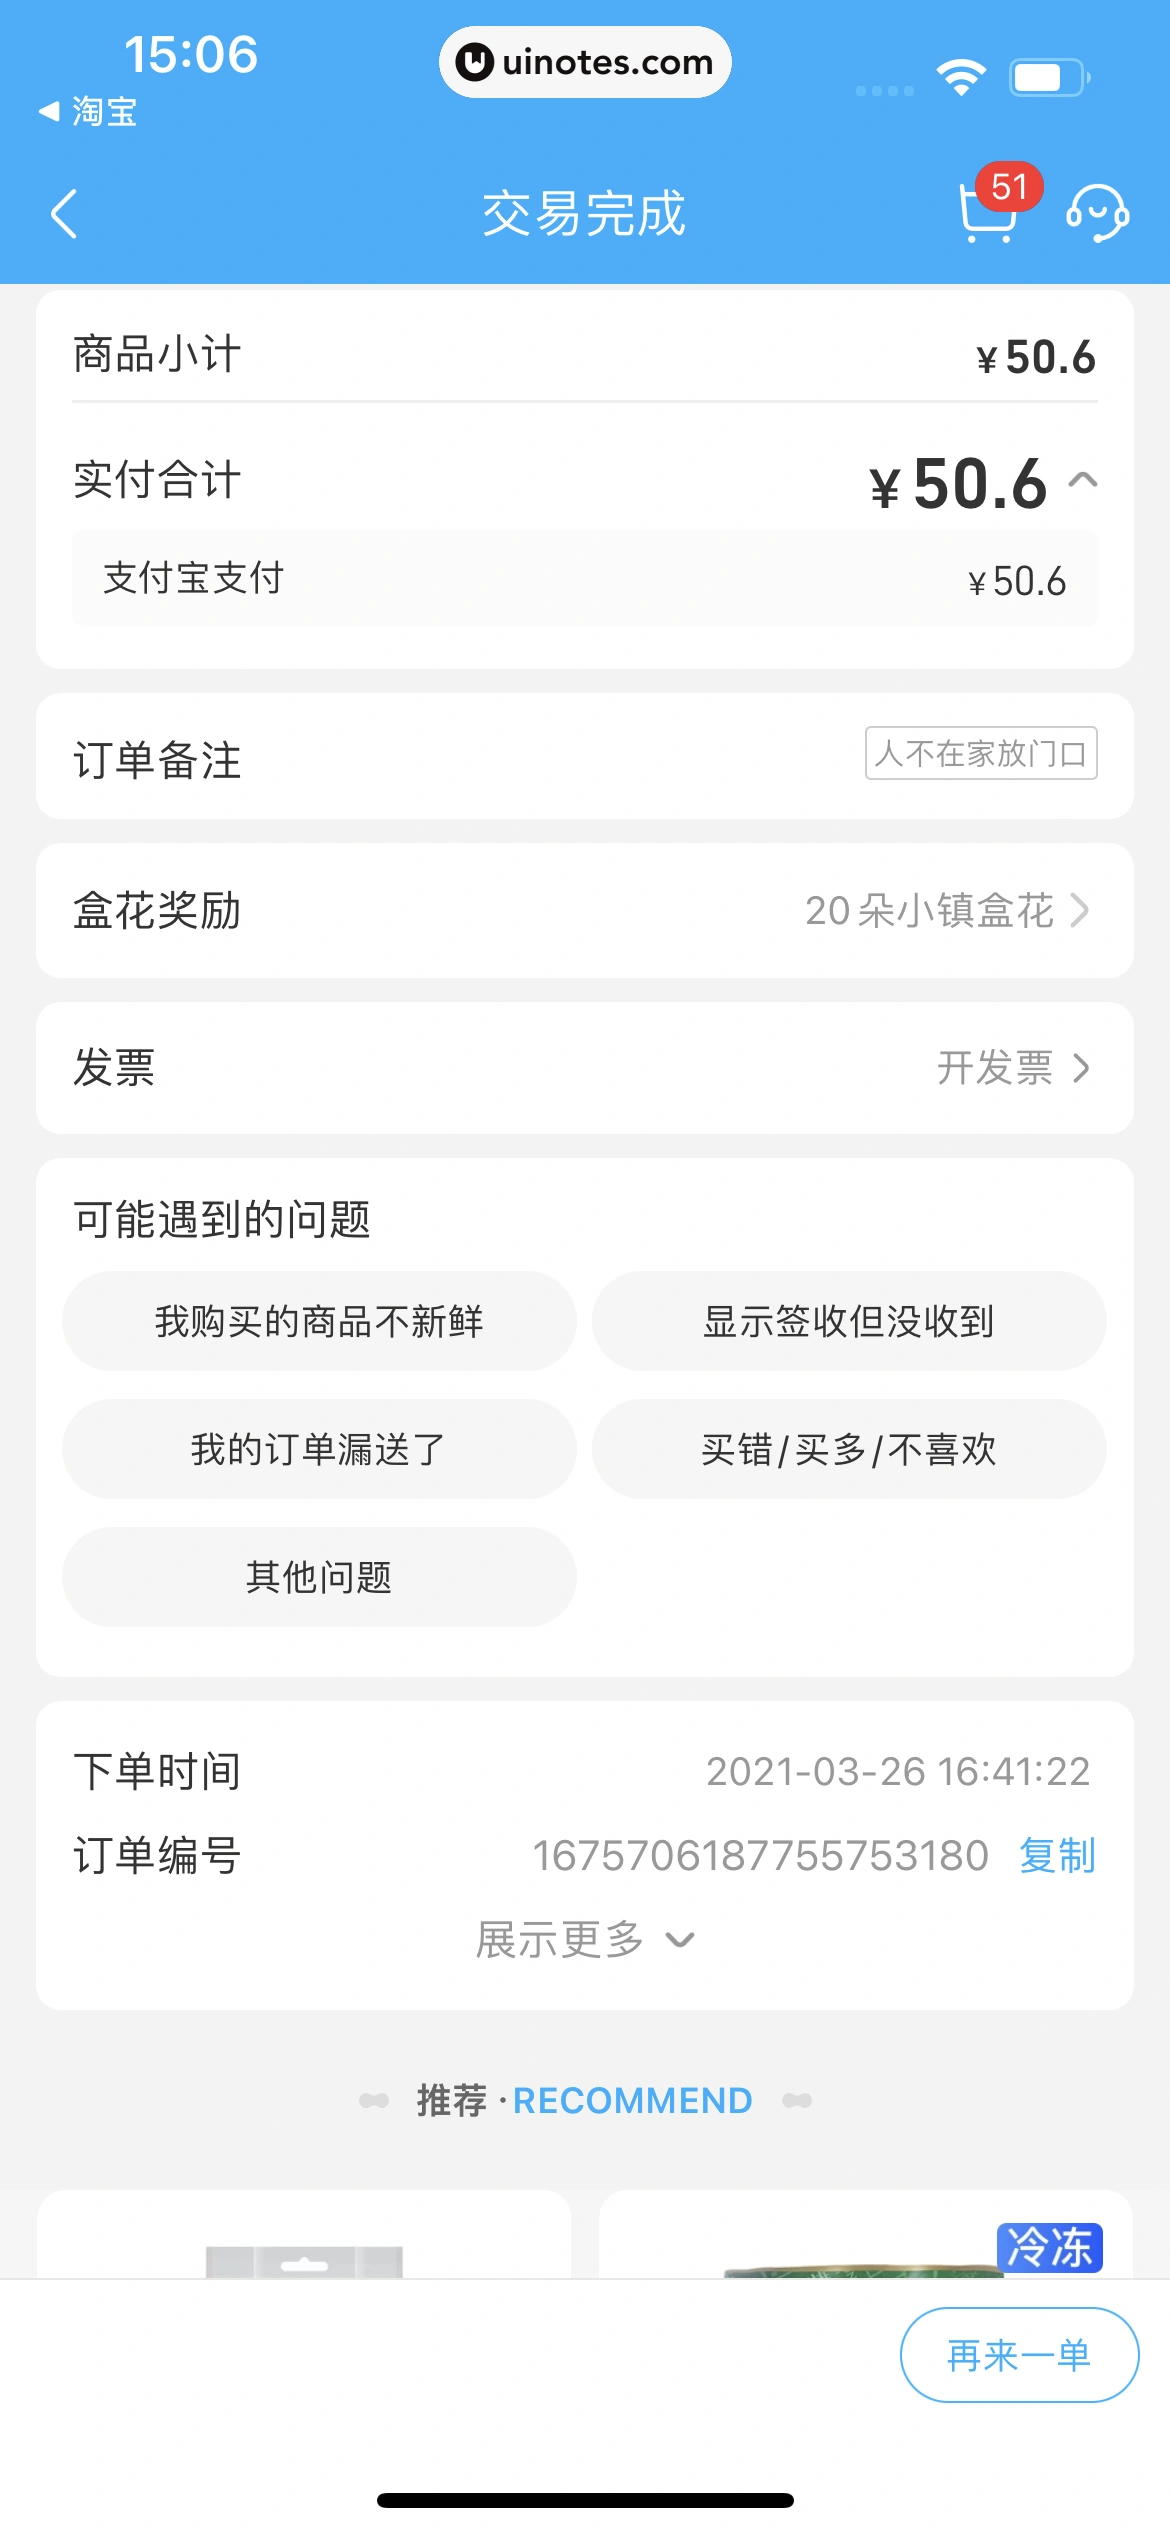 盒马 App 截图 440 - UI Notes